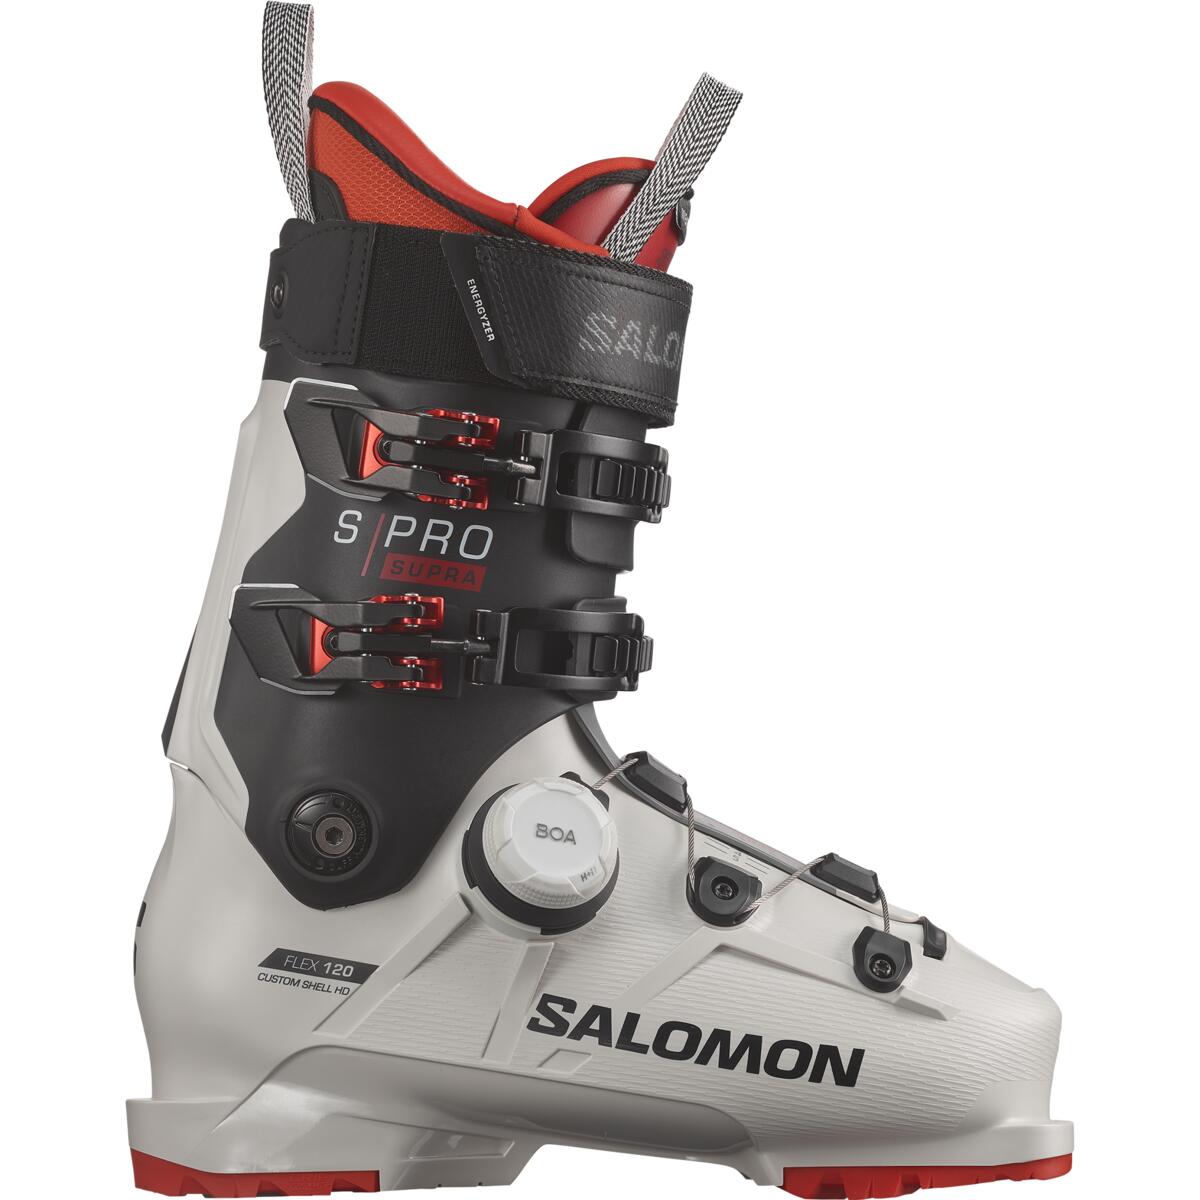 新しい到着 SALOMON サロモン スキーブーツ S PRO 100 GW 22-23 モデル